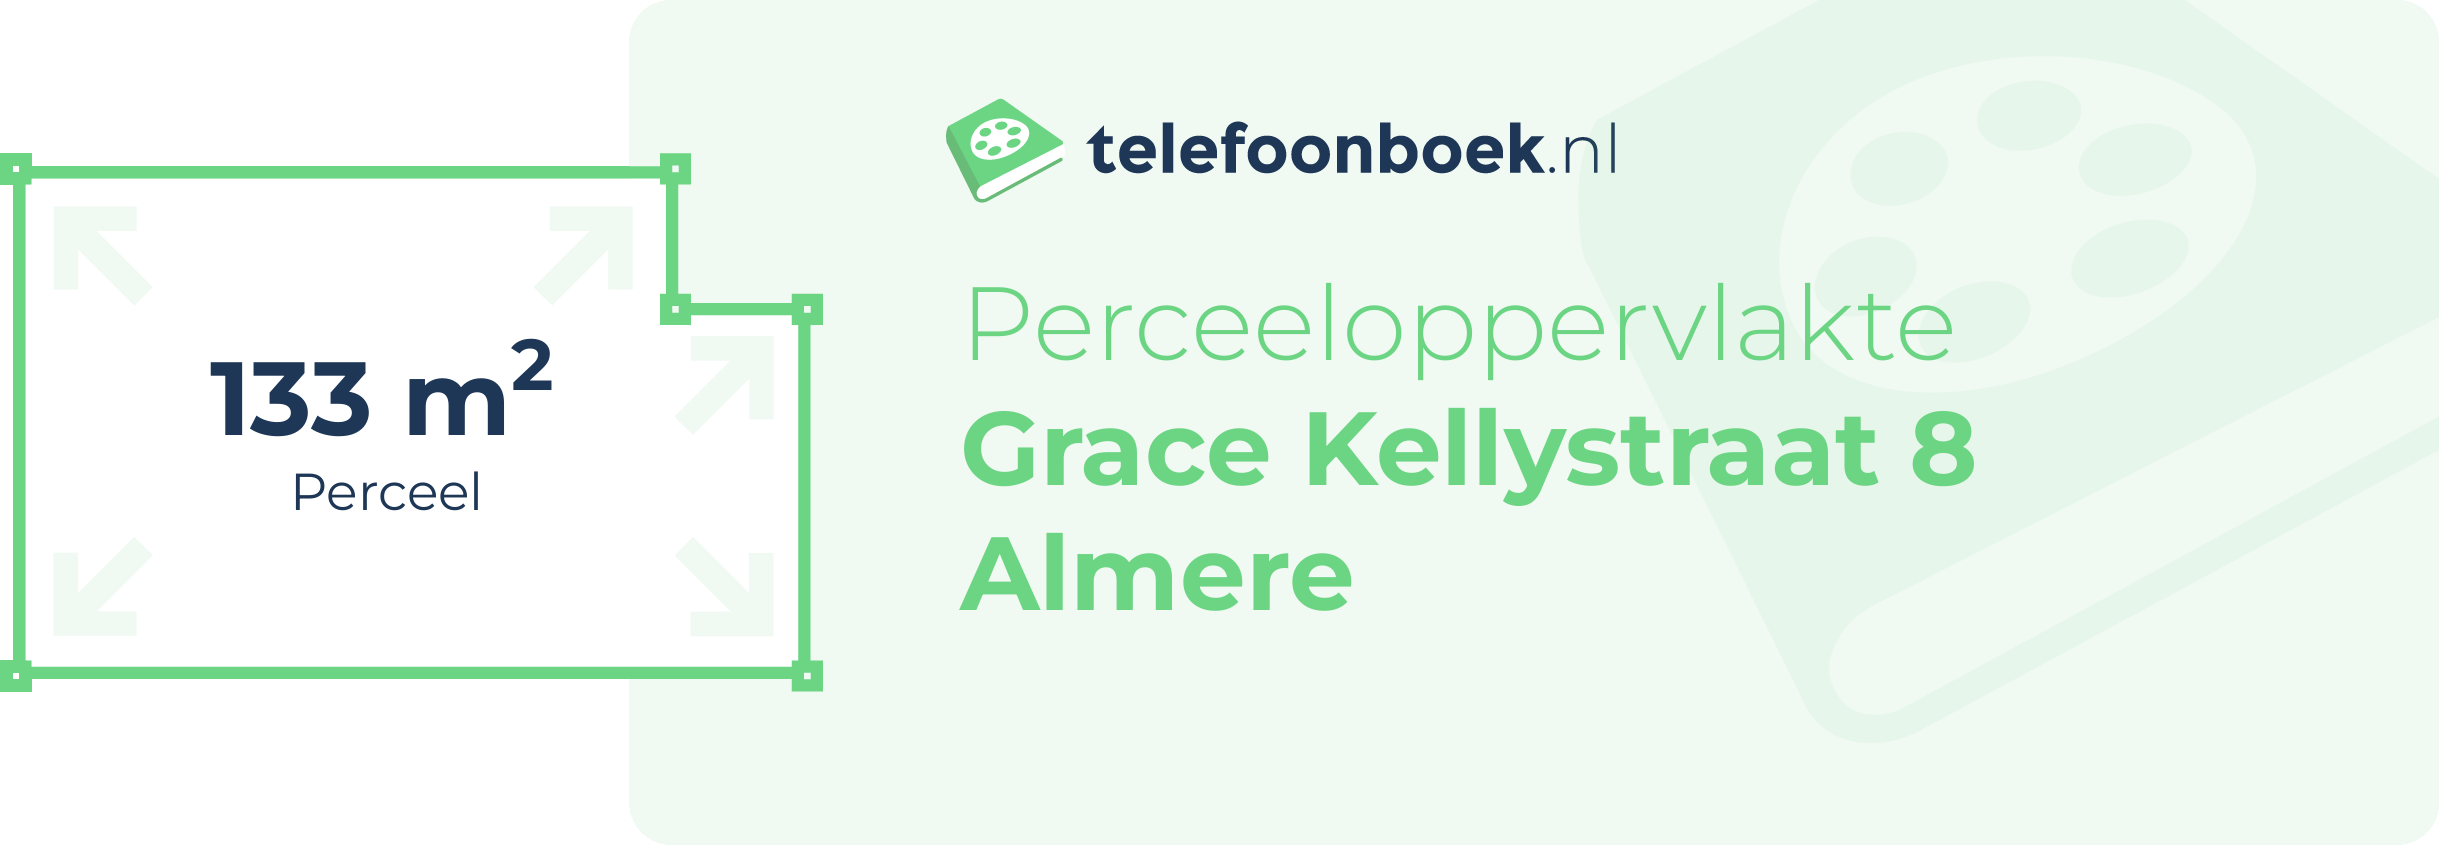 Perceeloppervlakte Grace Kellystraat 8 Almere